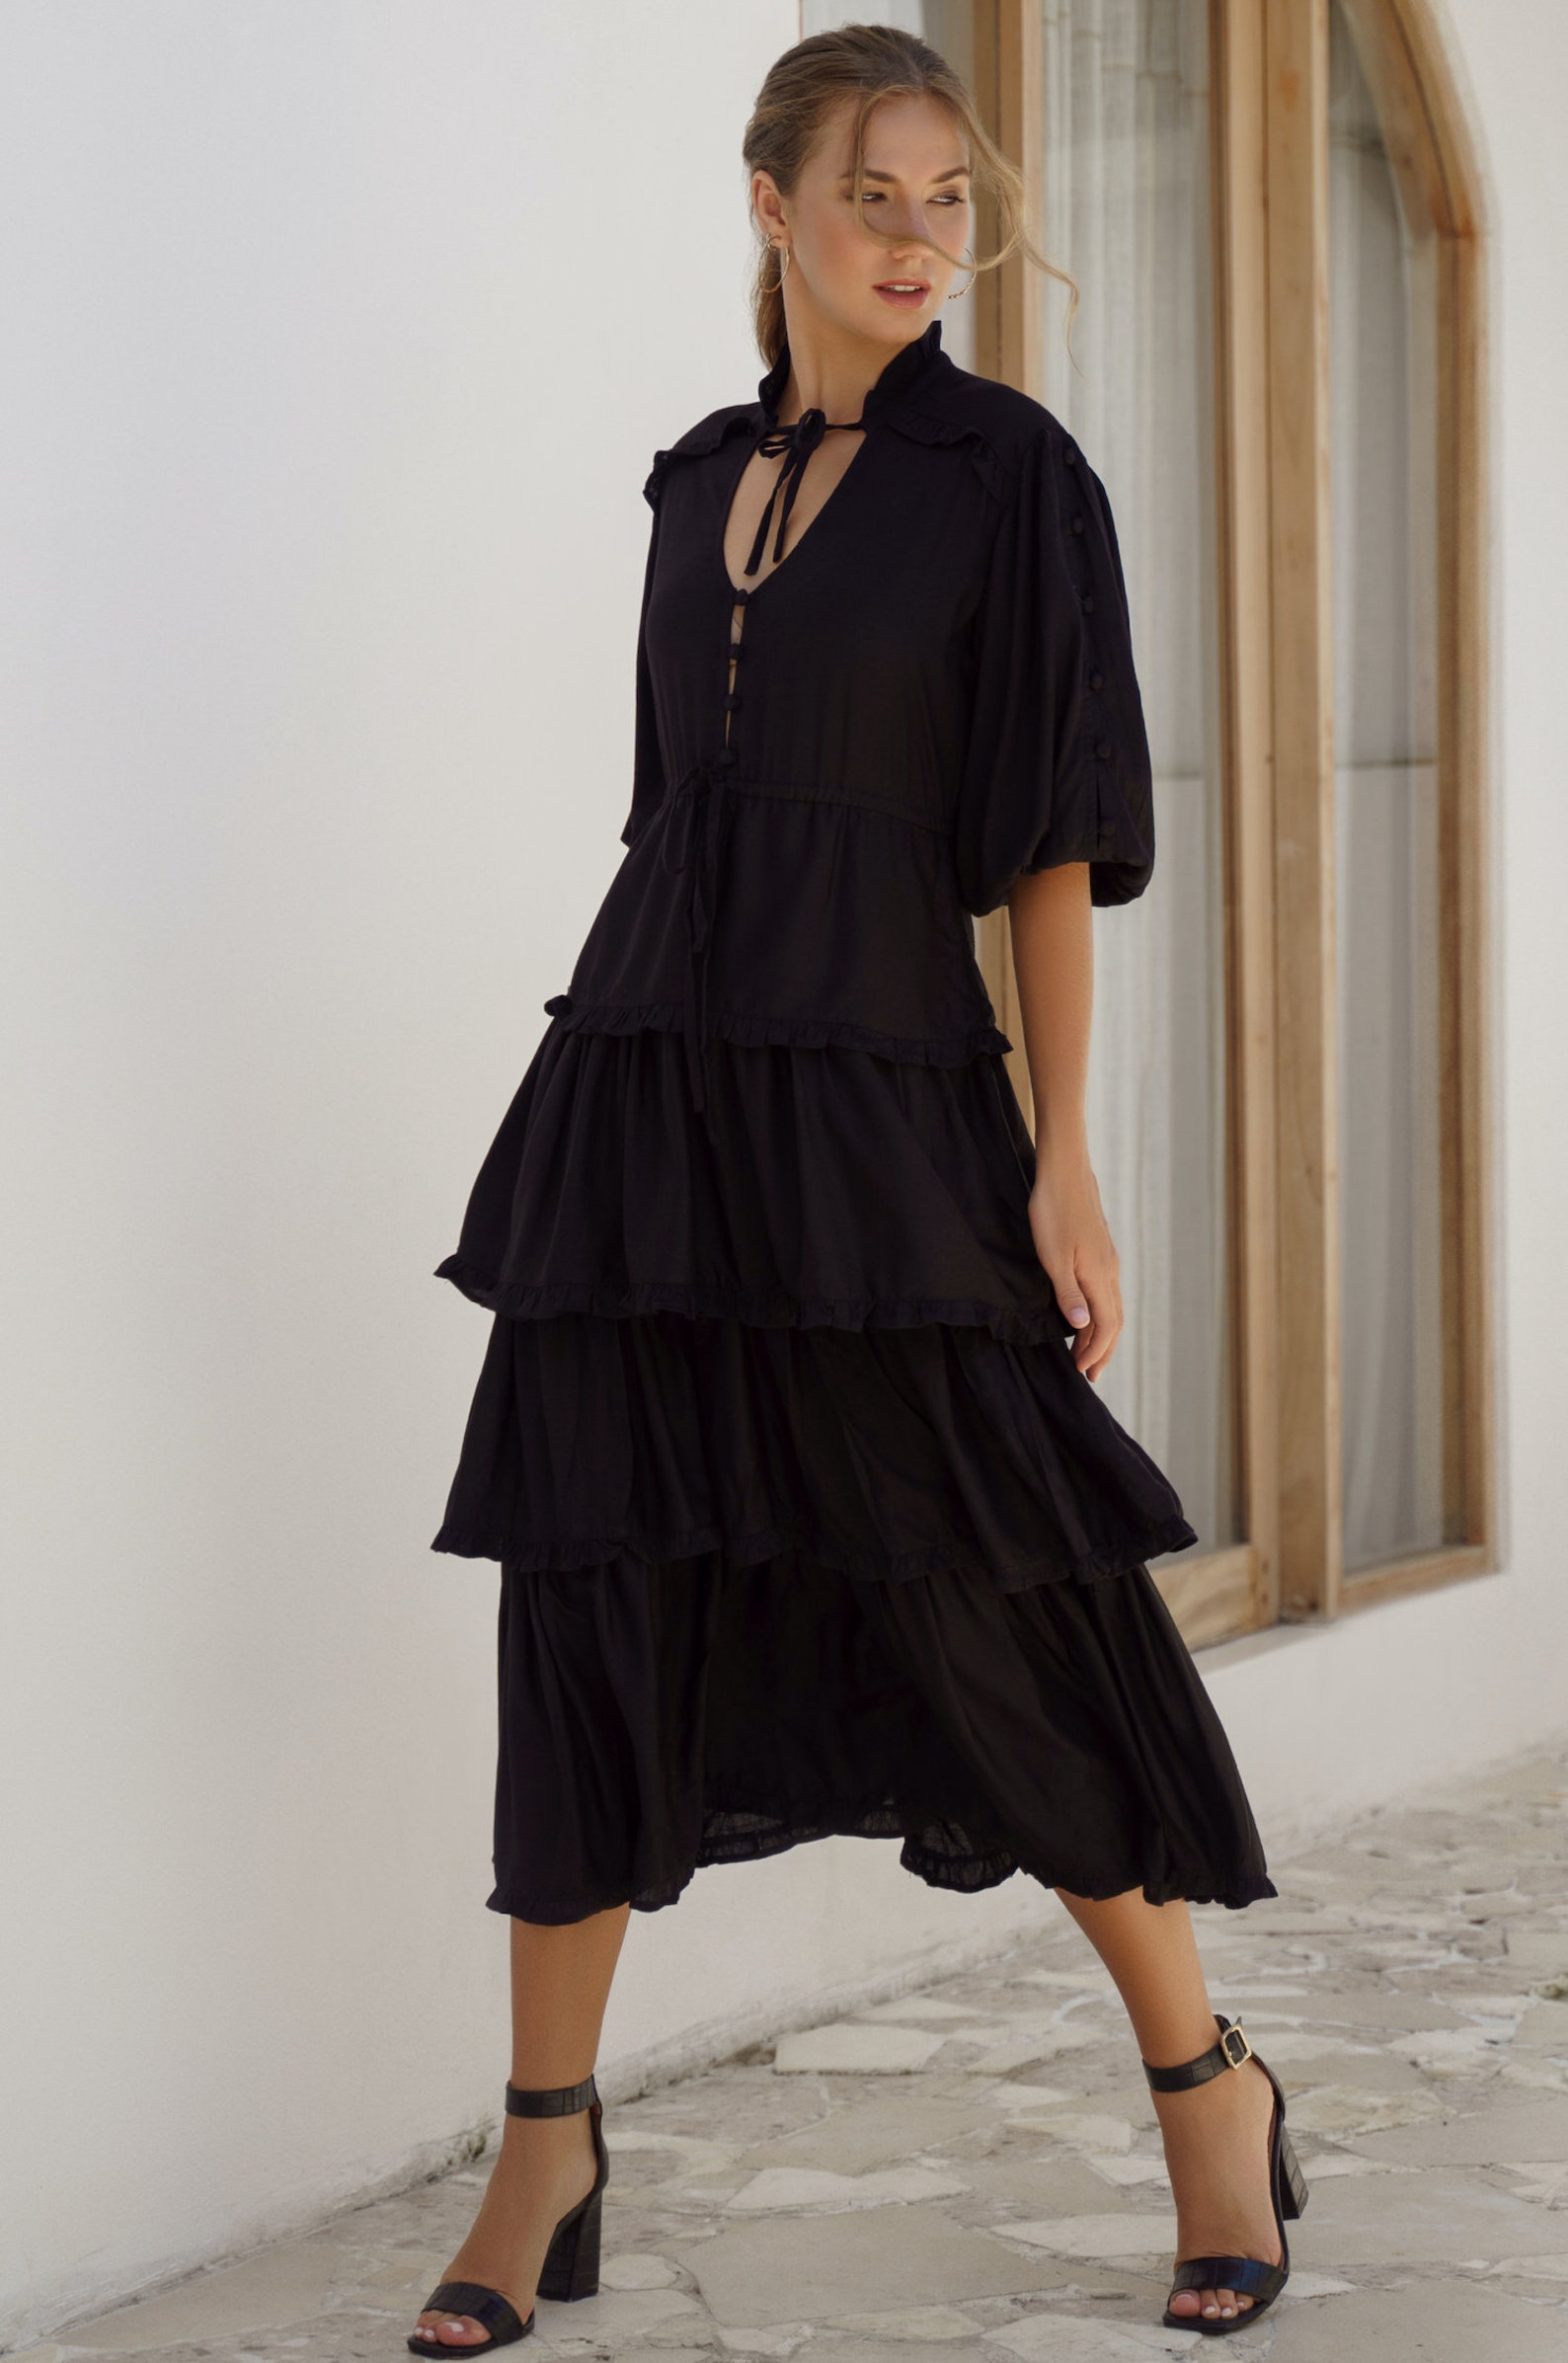 WILD WEST Midi Dress. Black Boho Dress Bohemian Gypsy Dress - Etsy